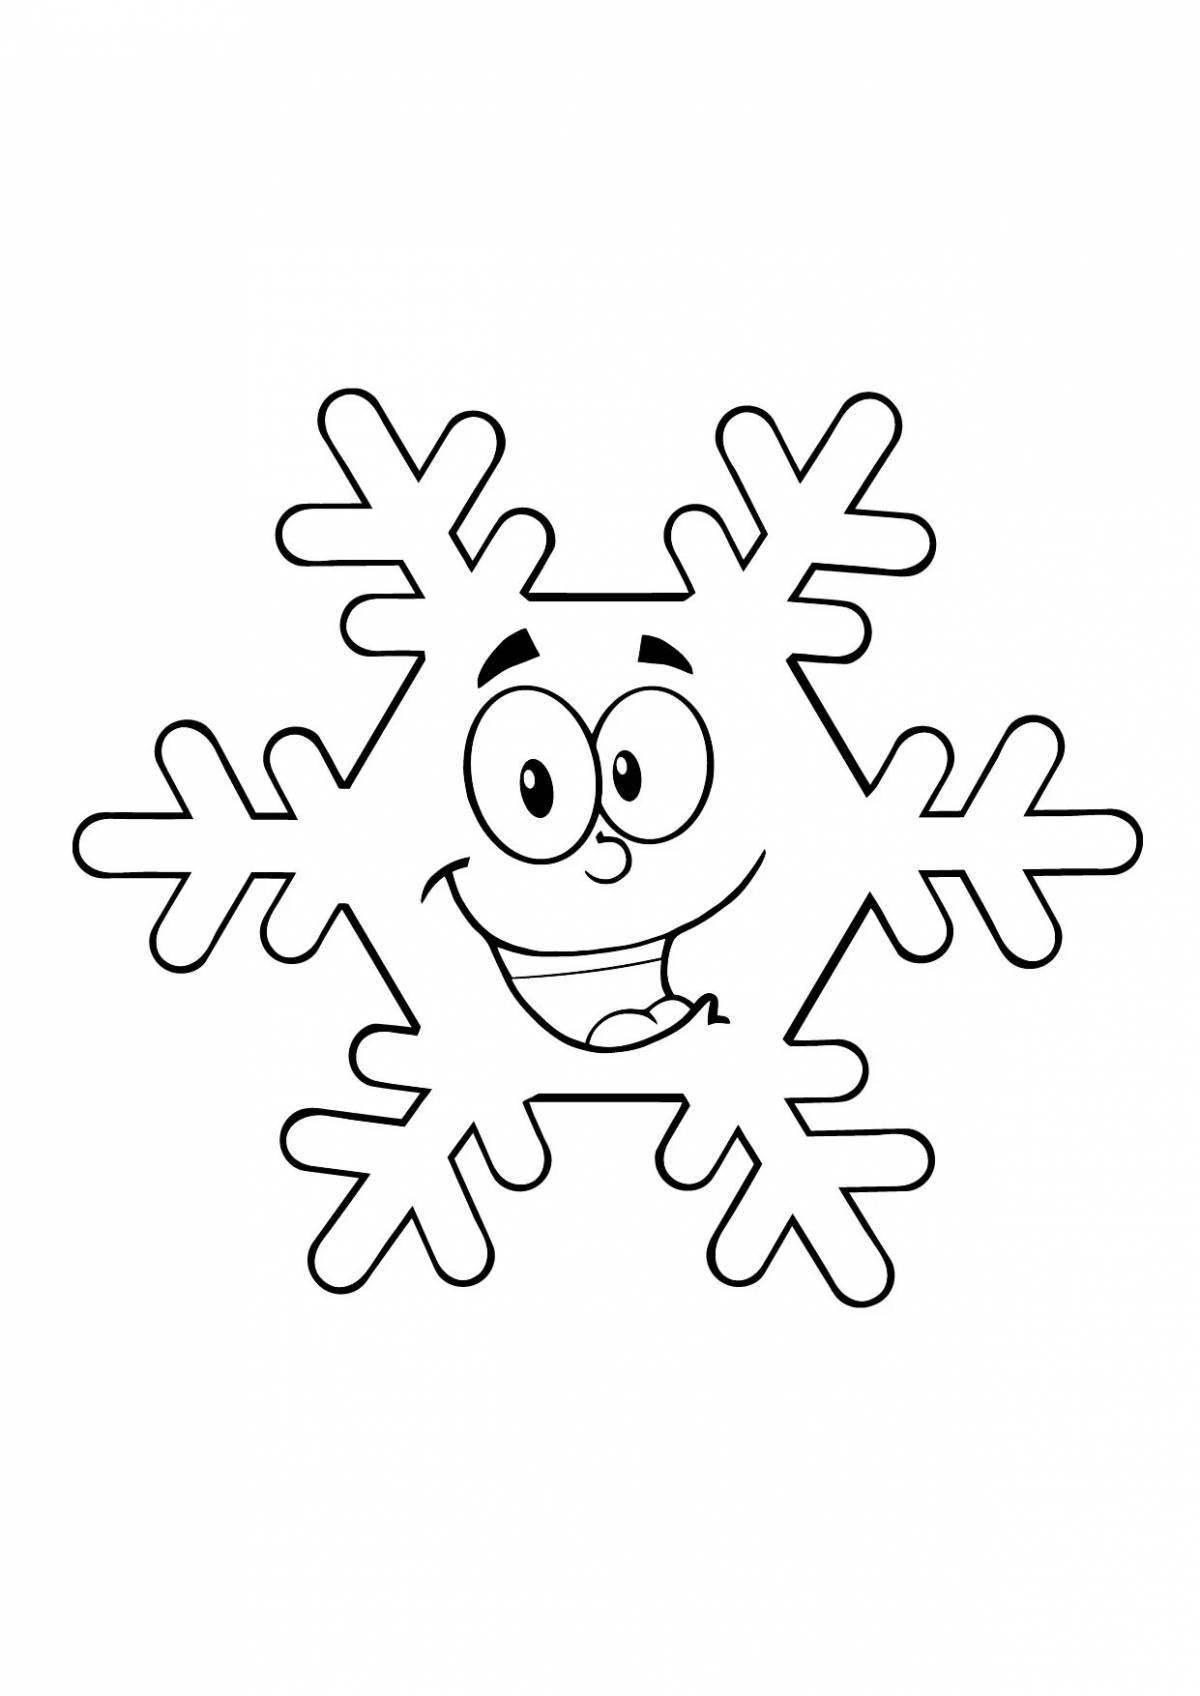 Joyful snowflake coloring book for kids